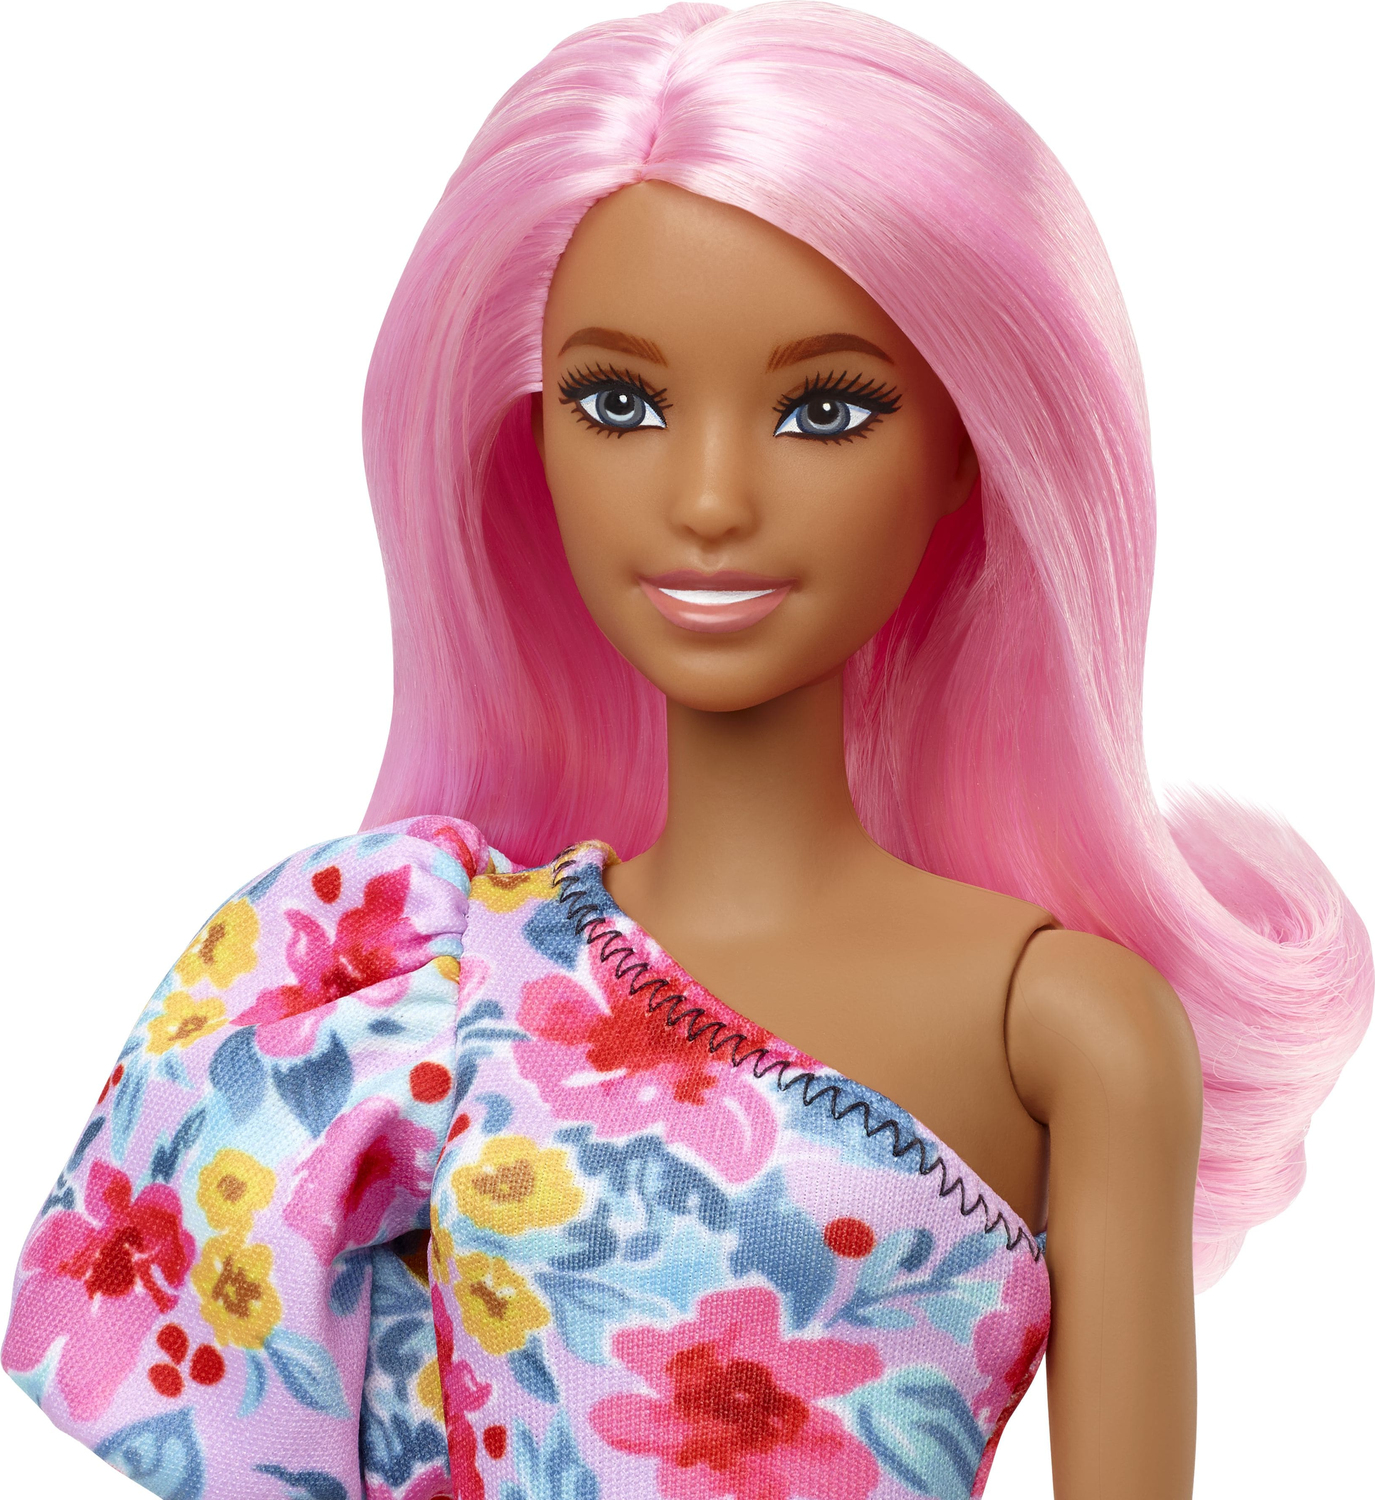 Barbie Fashionistas Doll #189